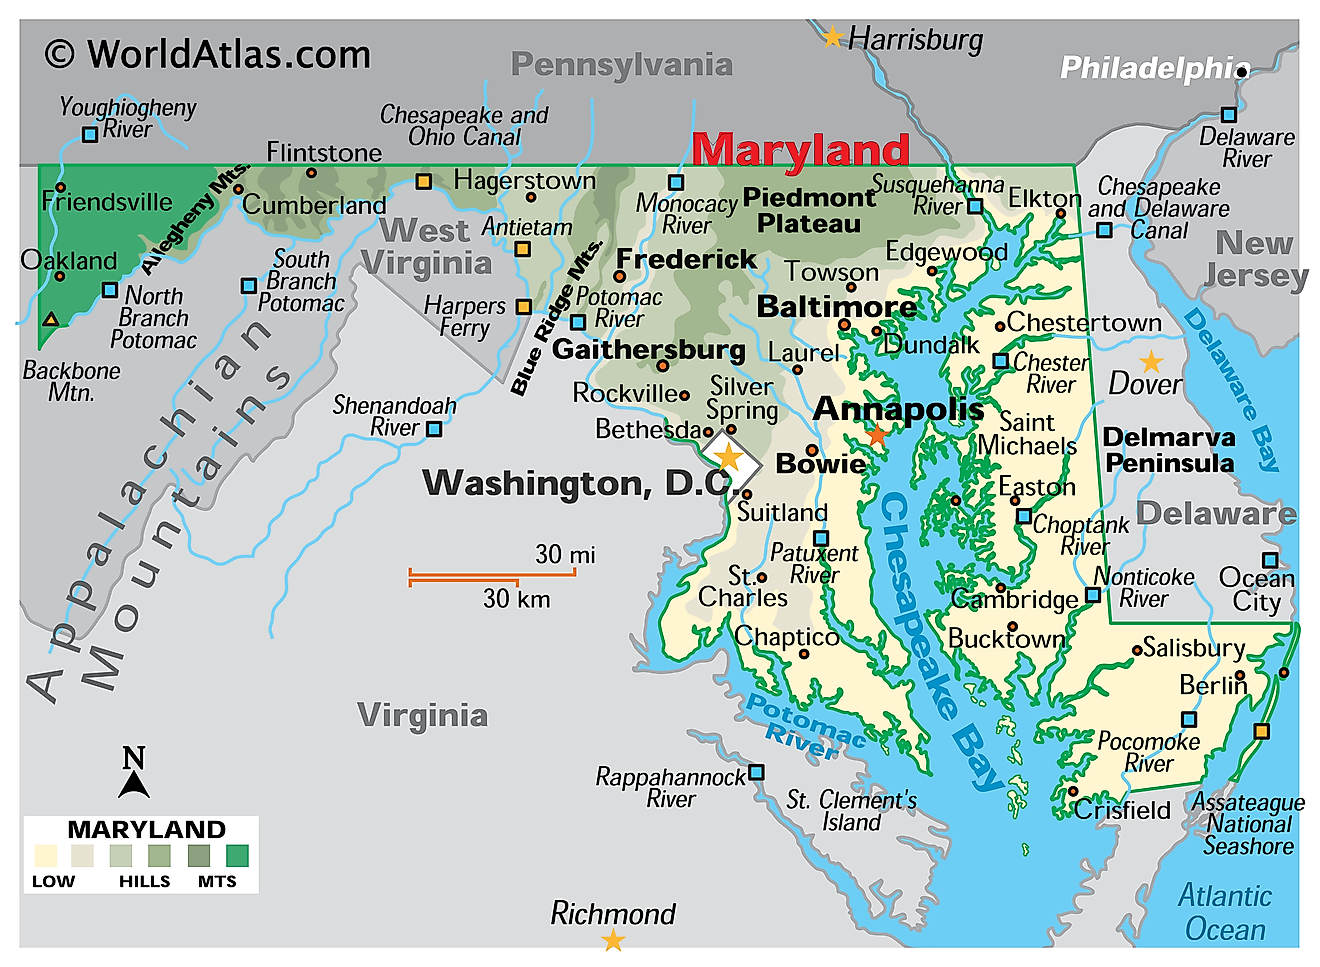 Physikalische Karte von Maryland. Sie zeigt die physischen Merkmale von Maryland, einschließlich der Gebirgszüge, der großen Flüsse, der Delmarva-Halbinsel und der Chesapeake Bay.